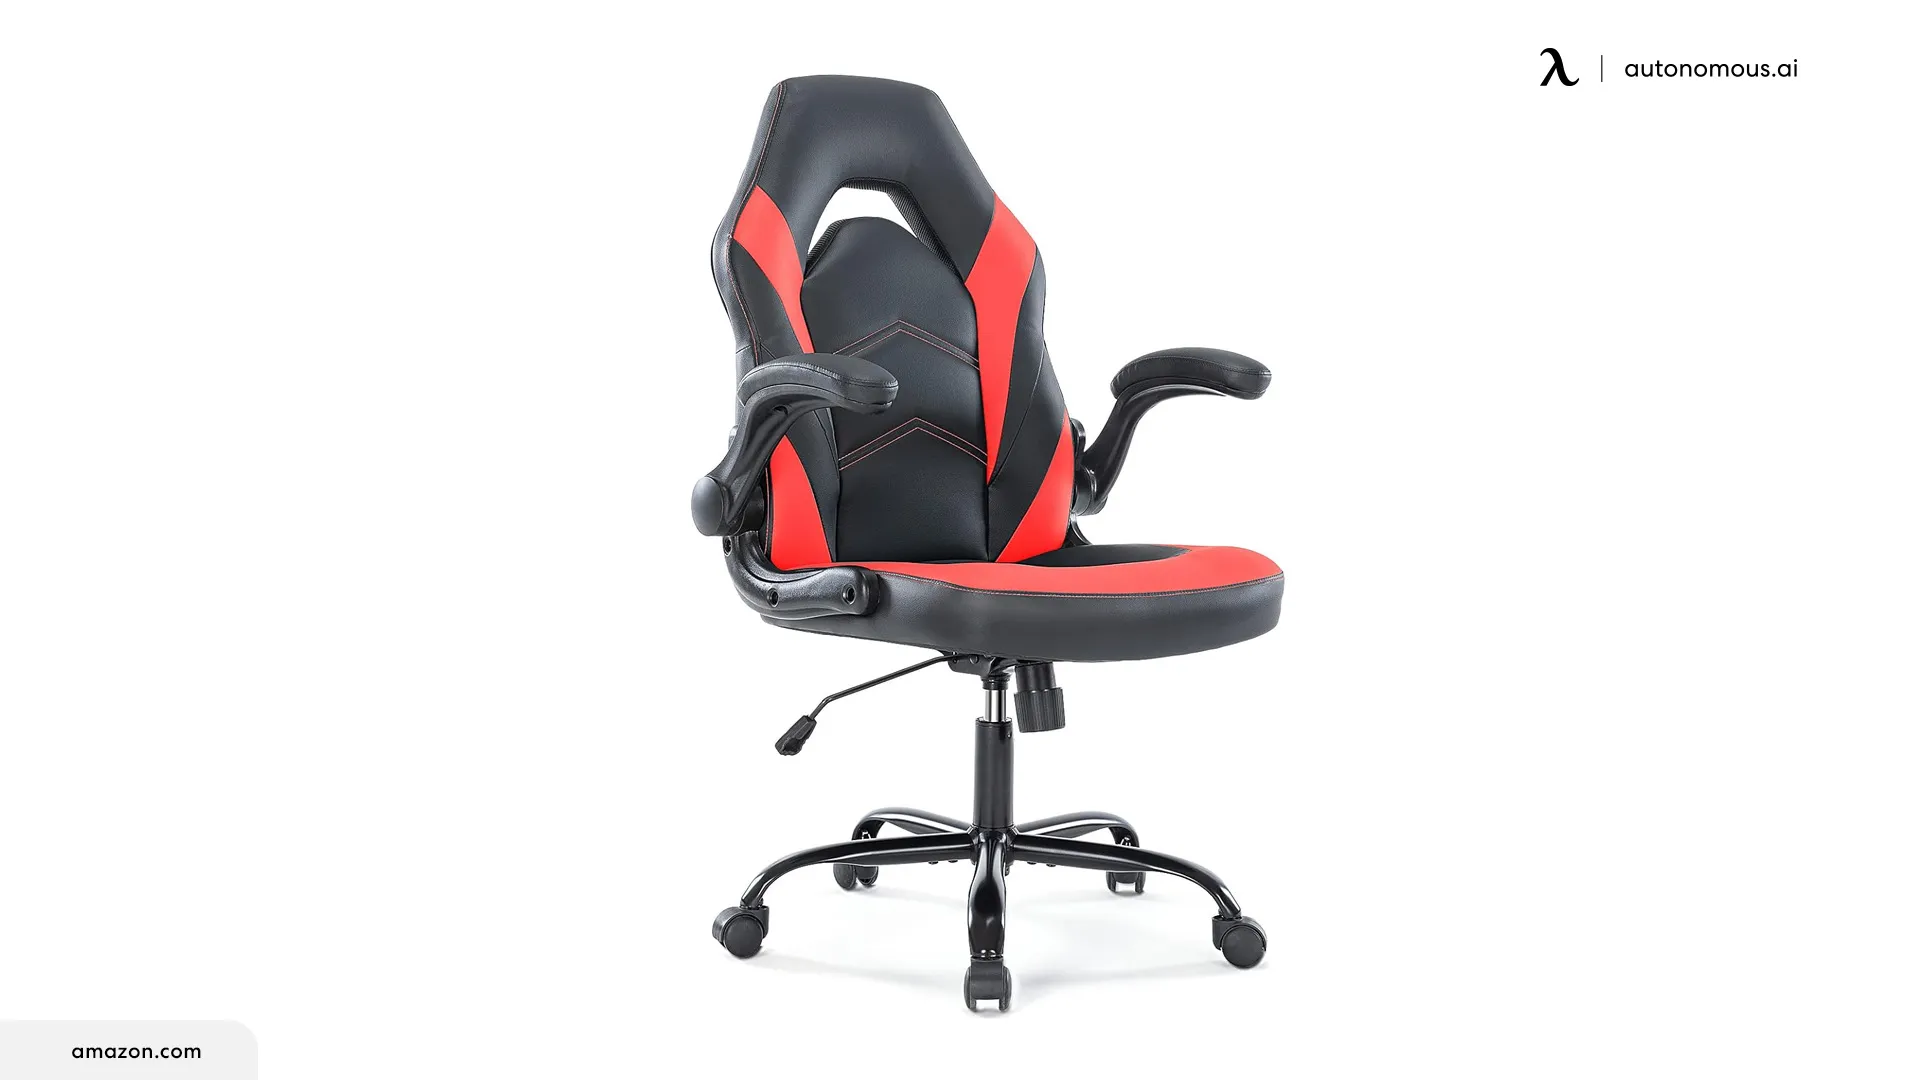 NEWBULIG Ergonomic Gaming Chair